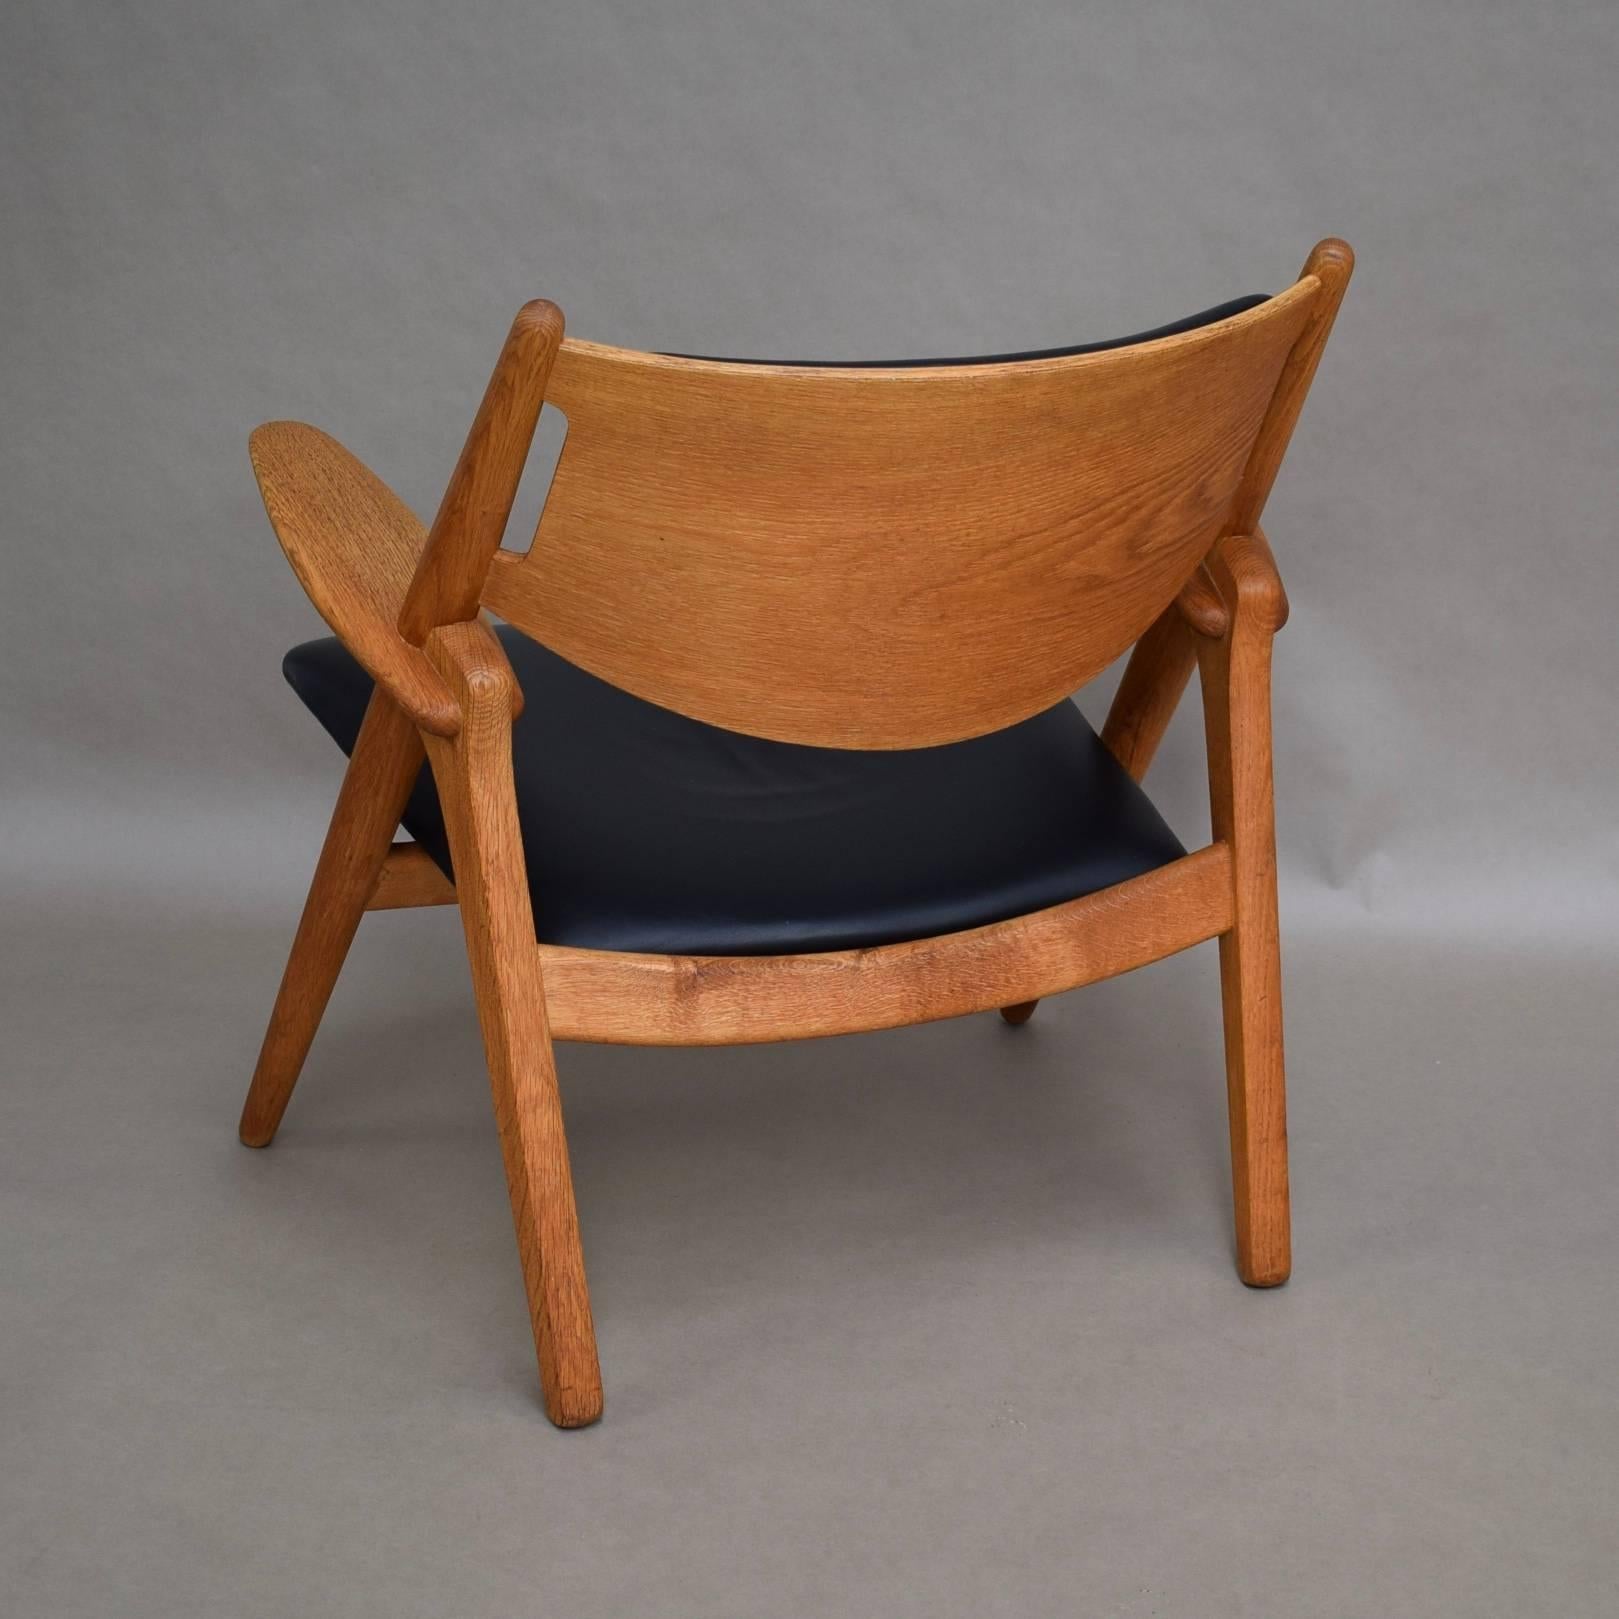 Scandinavian Modern Hans J. Wegner CH28 Sawbuck Lounge Chair, Denmark, circa 1950